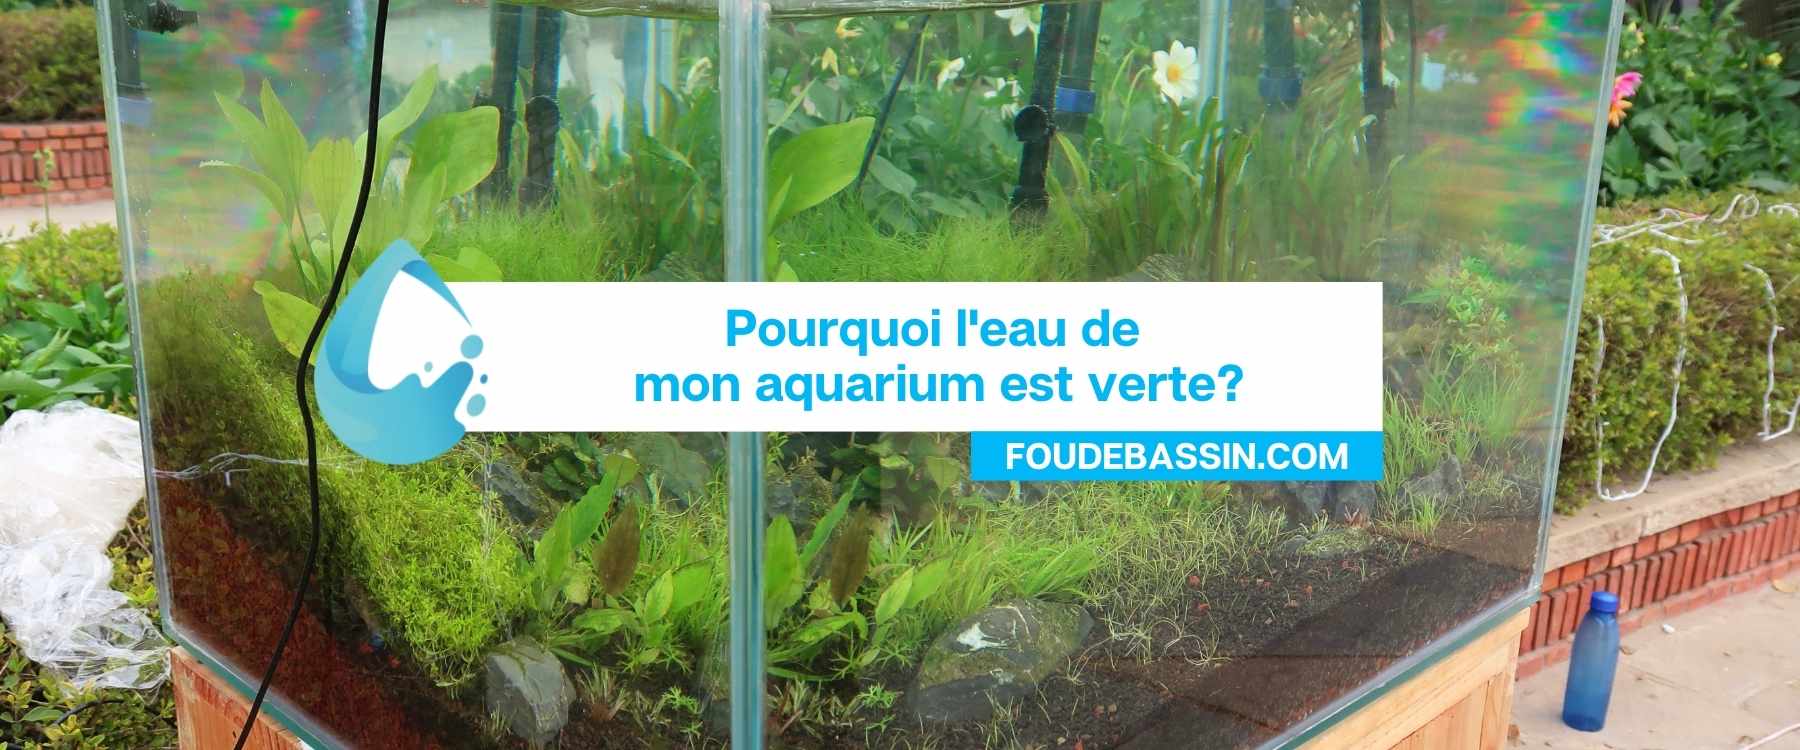 Pourquoi l'eau de mon aquarium est verte?